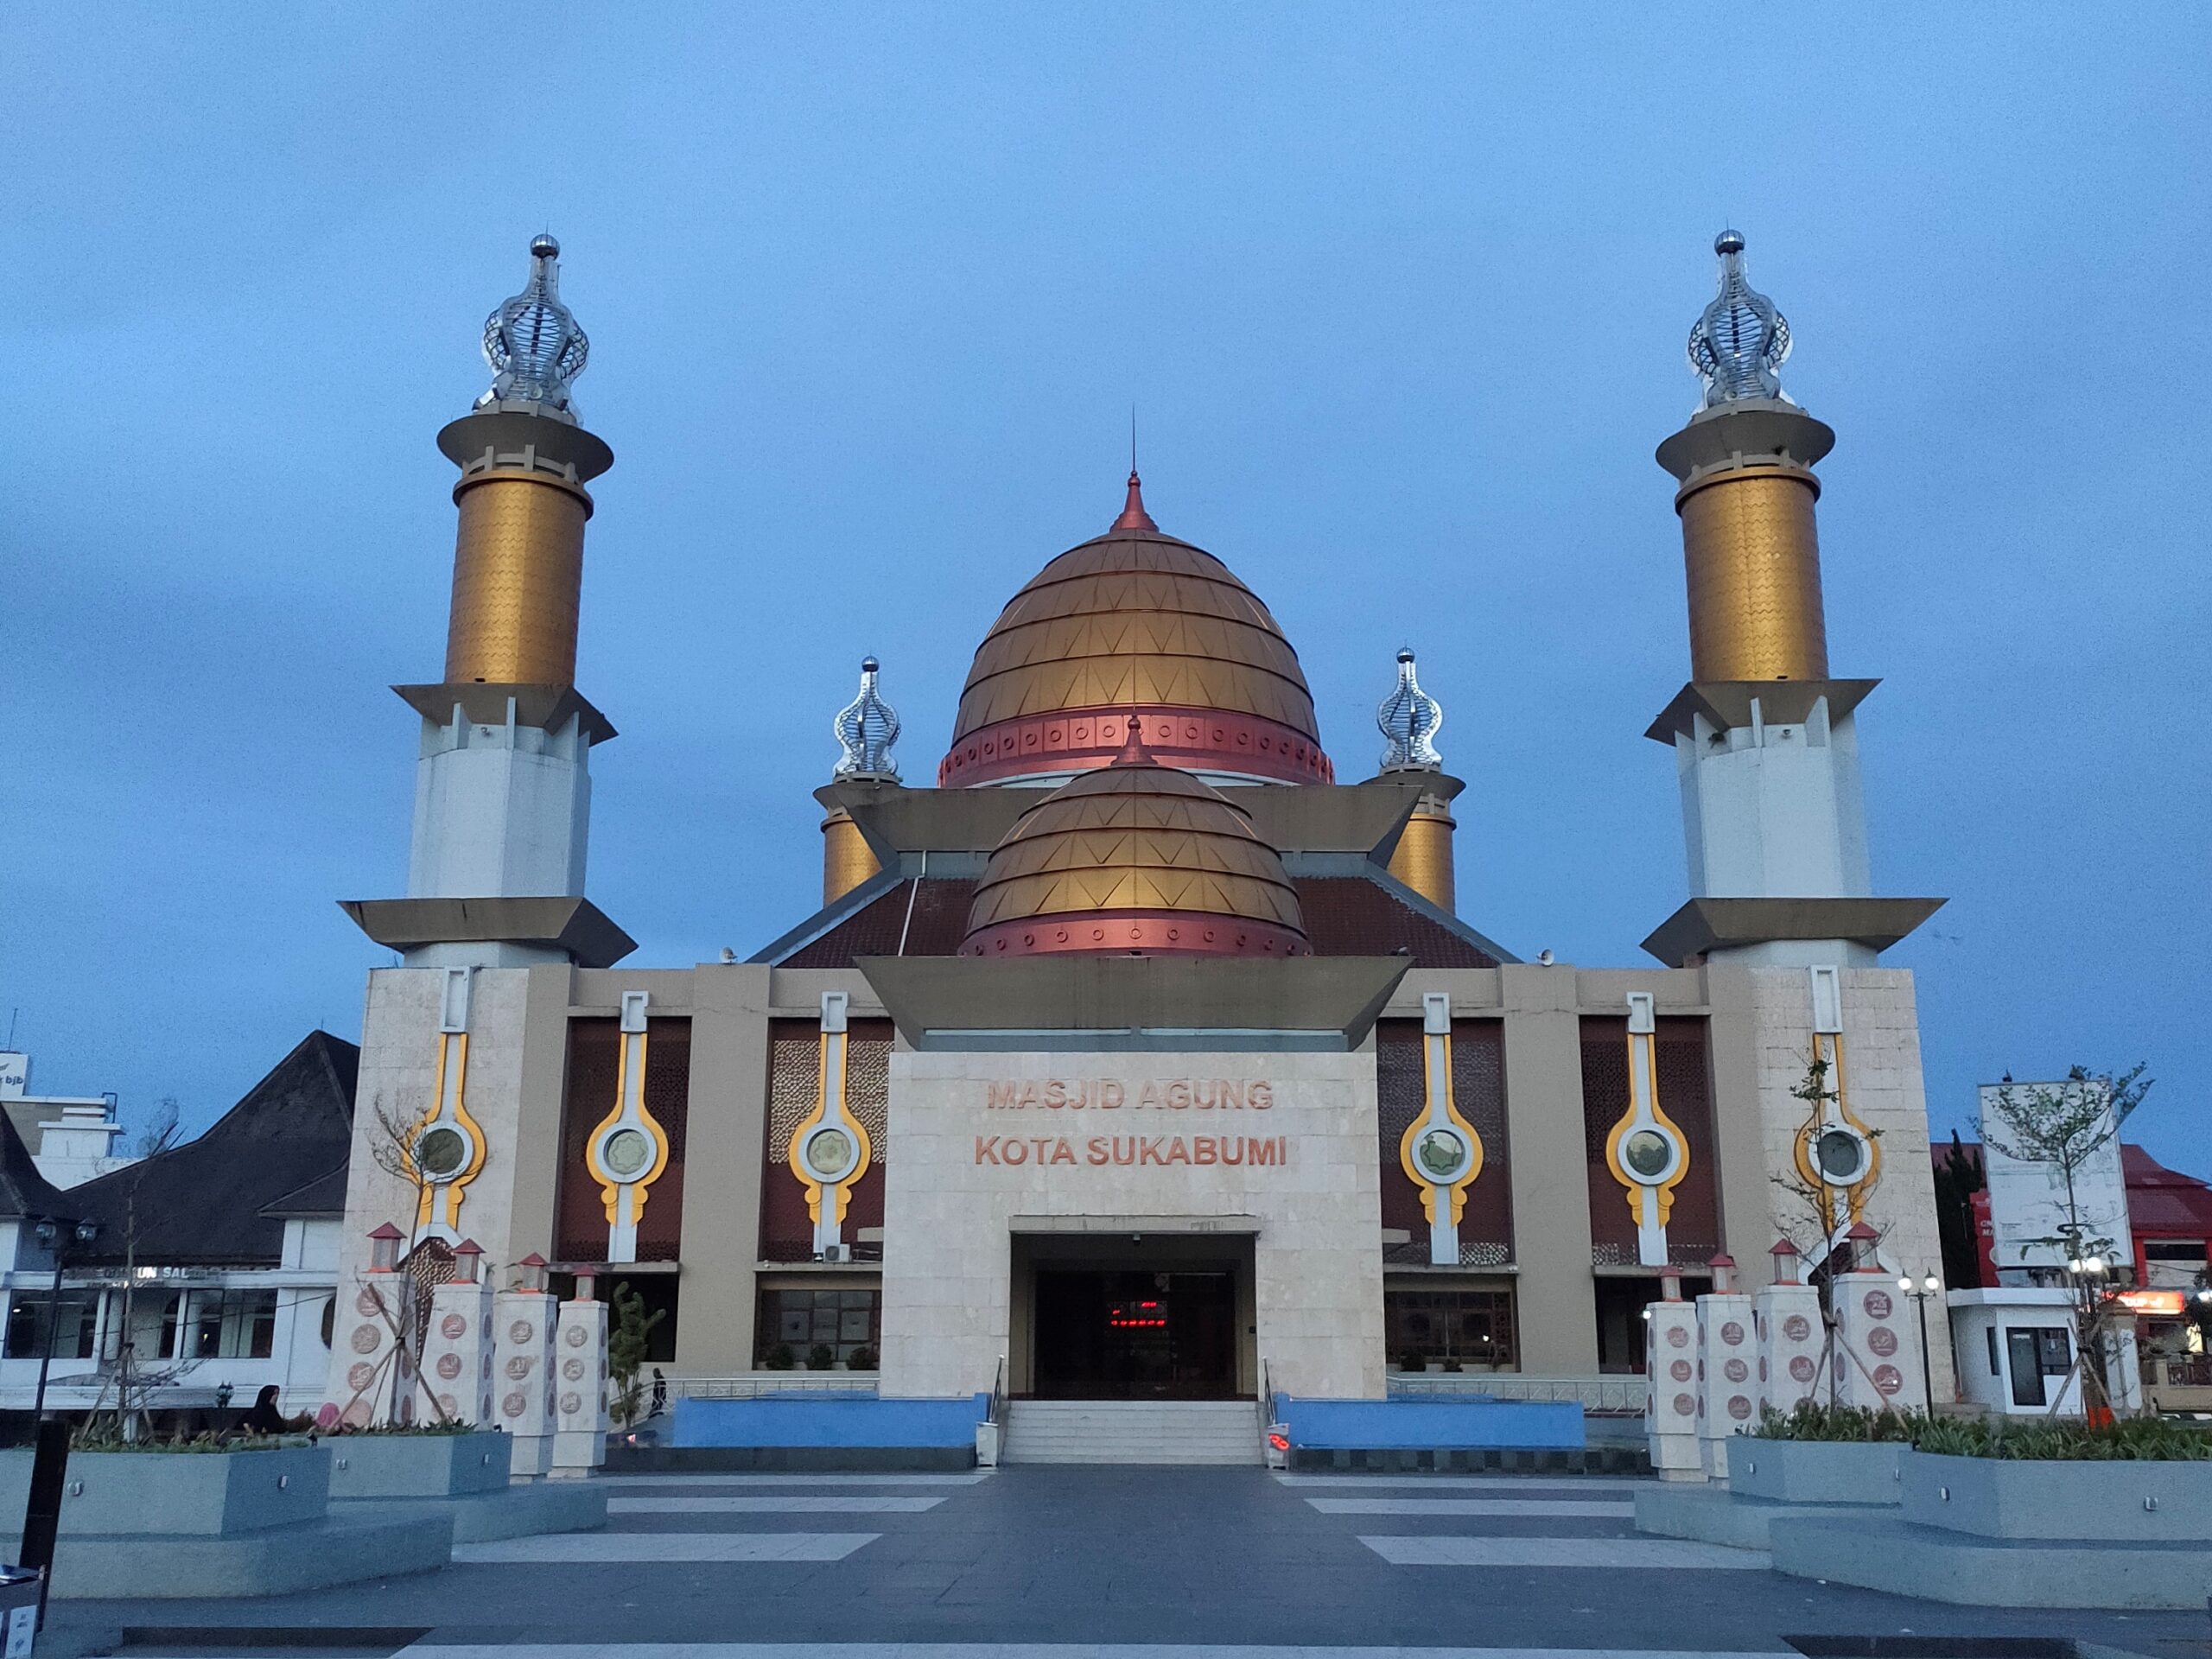 masjid agung